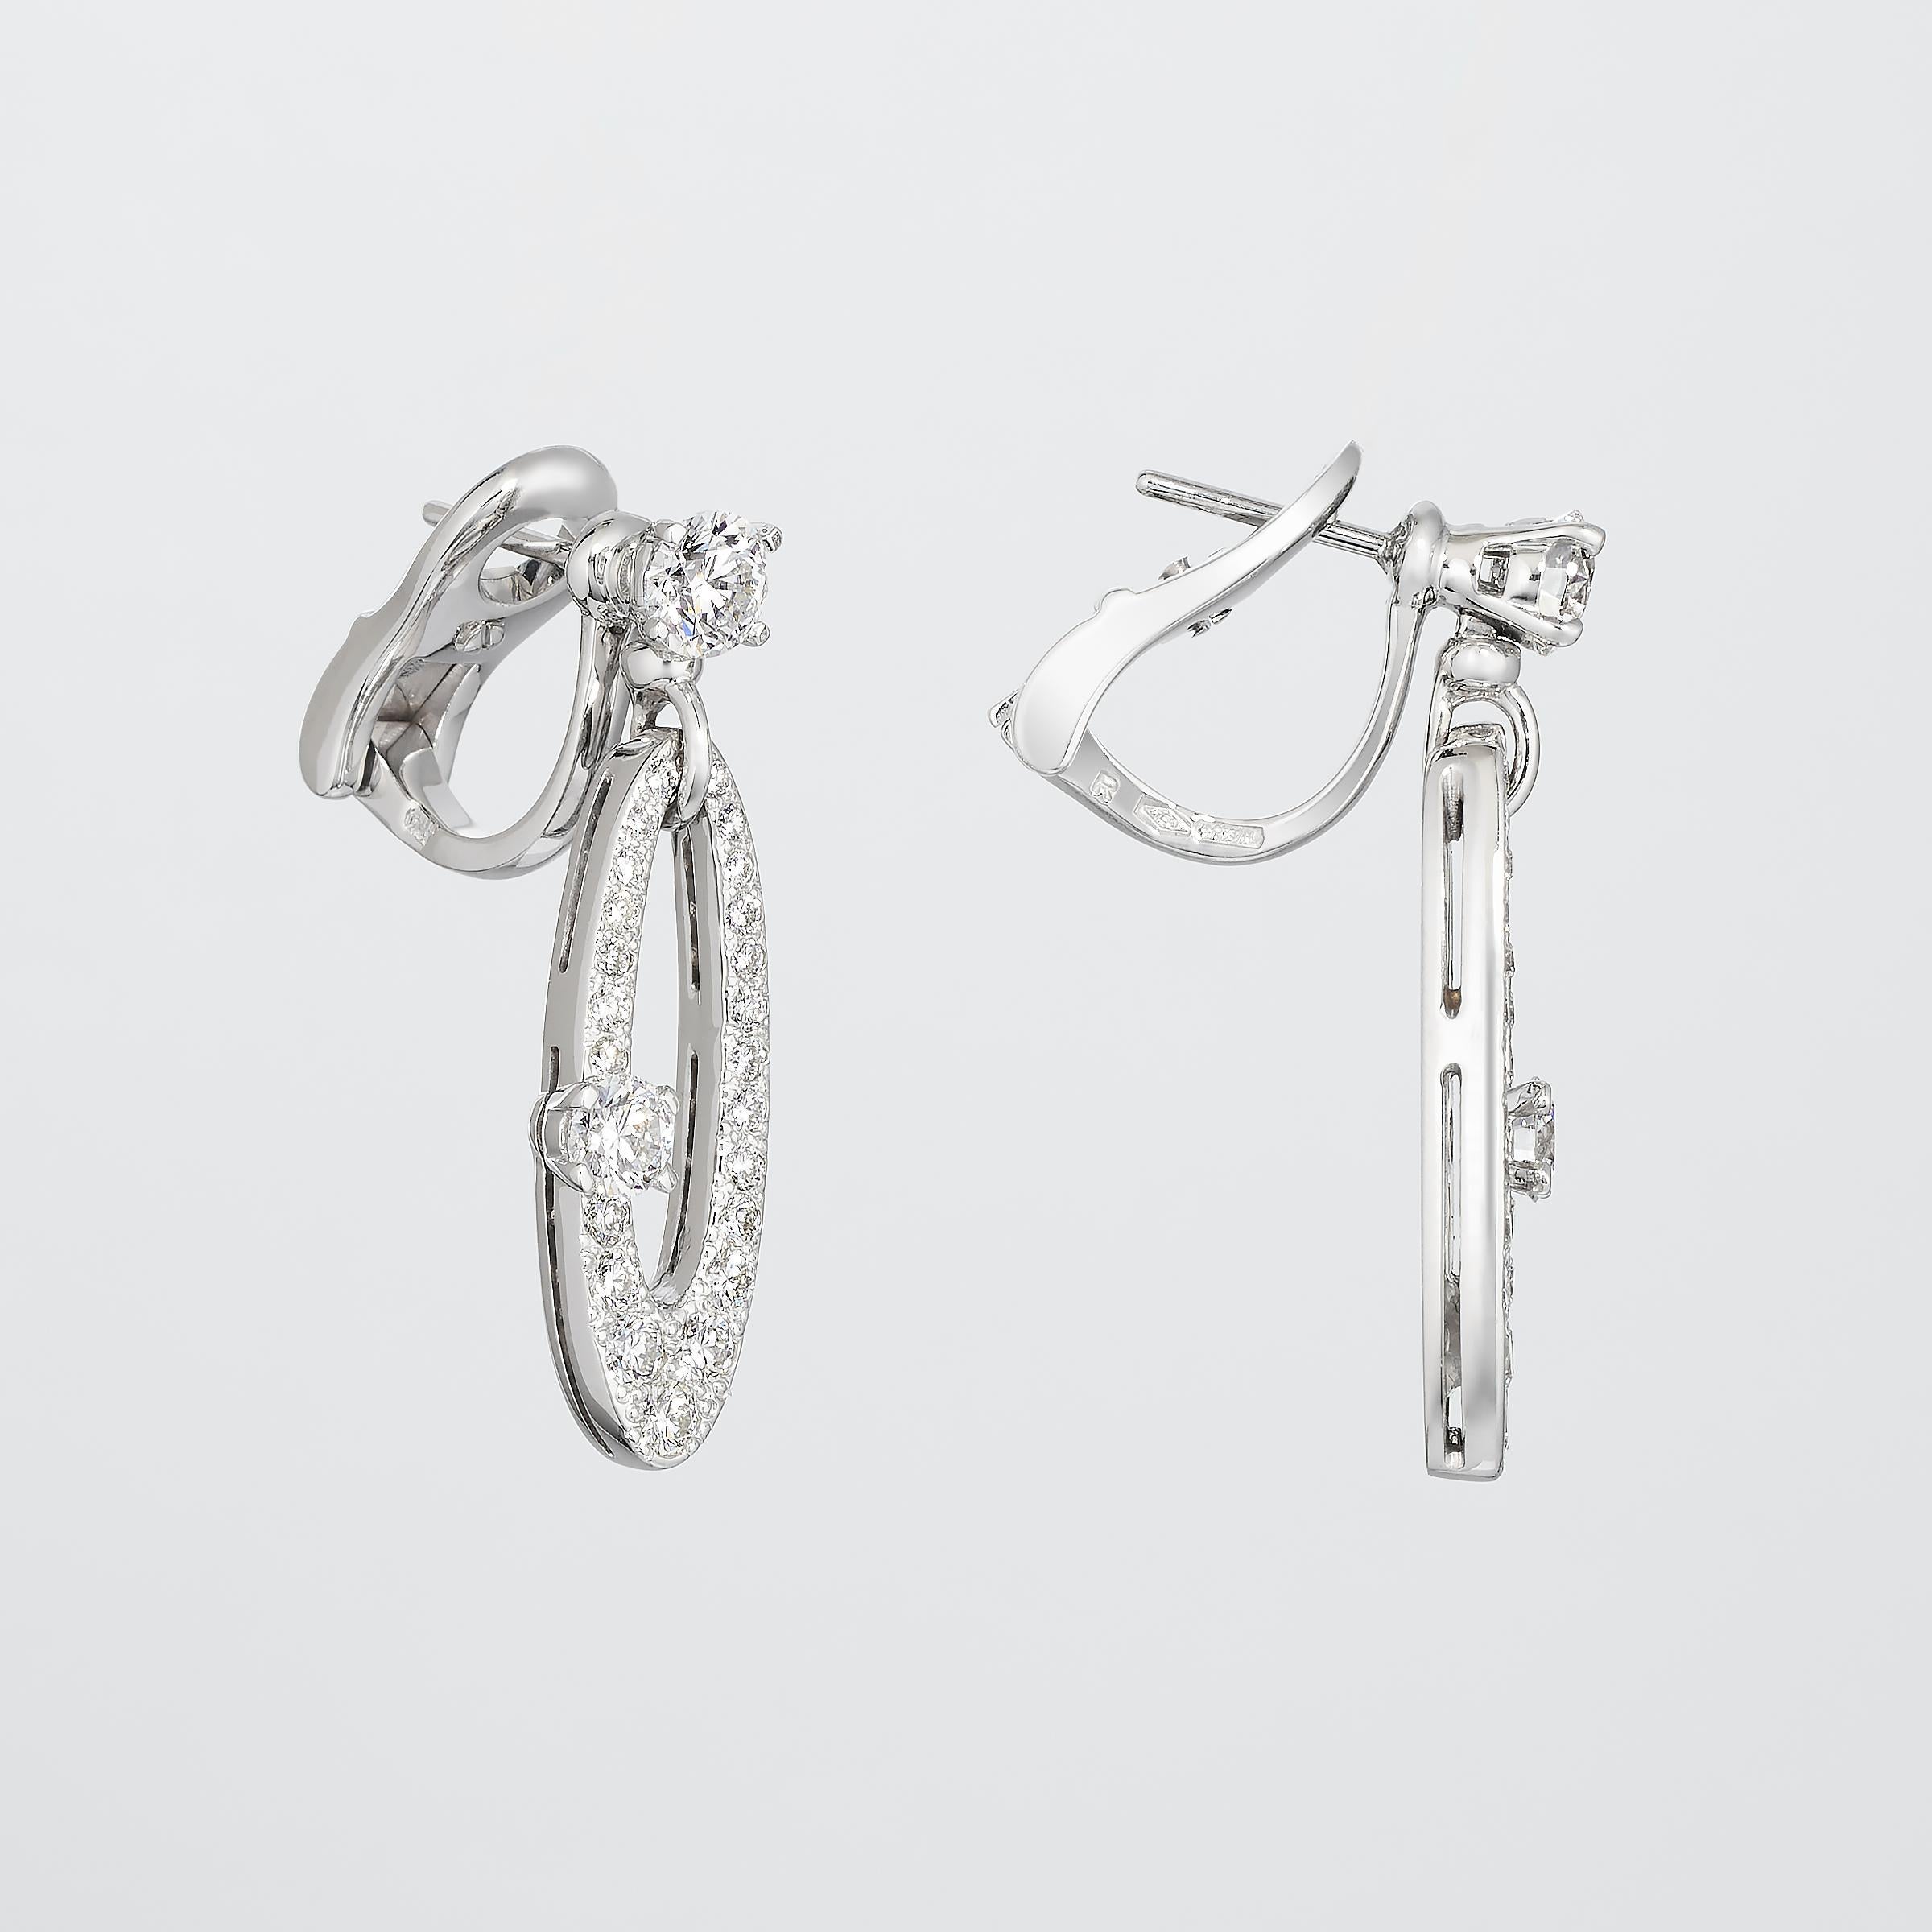 Les boucles d'oreilles en diamant Bulgari de la collection Elysium, élégantes et sophistiquées, brillent d'environ 2,5 carats de diamants blancs fins sertis dans de l'or 18 carats. Cette collection Bulgari s'inspire de l'esthétique Art Deco et les